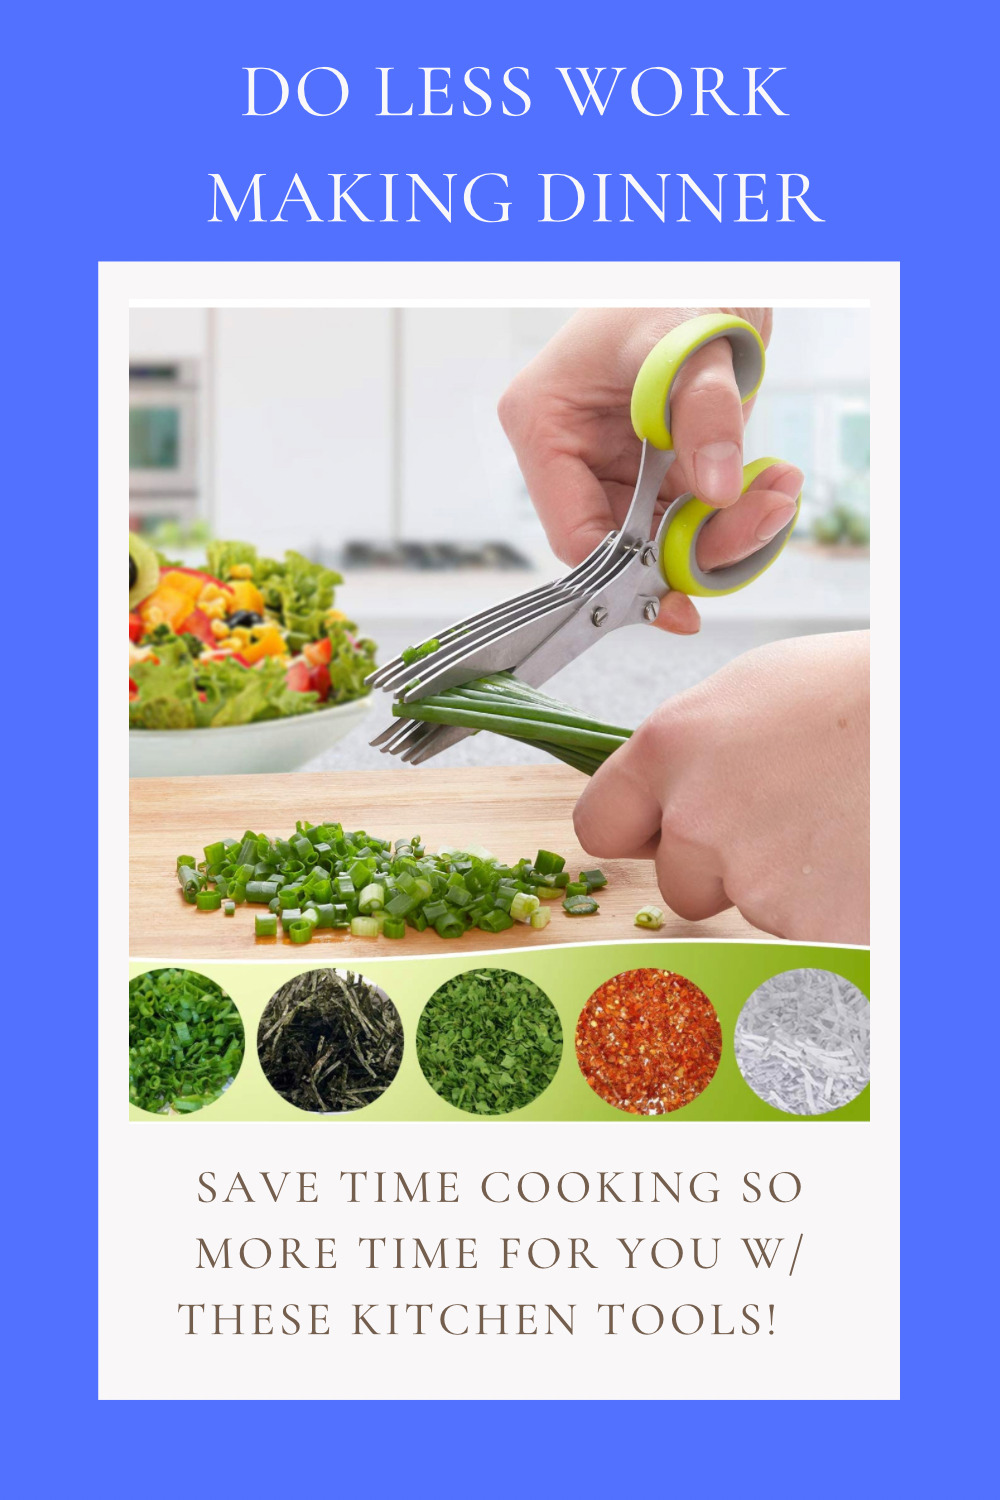 CHOP VEGETABLES LIKE A BREEZE - Kitchen Ideas Veggie Slicer or